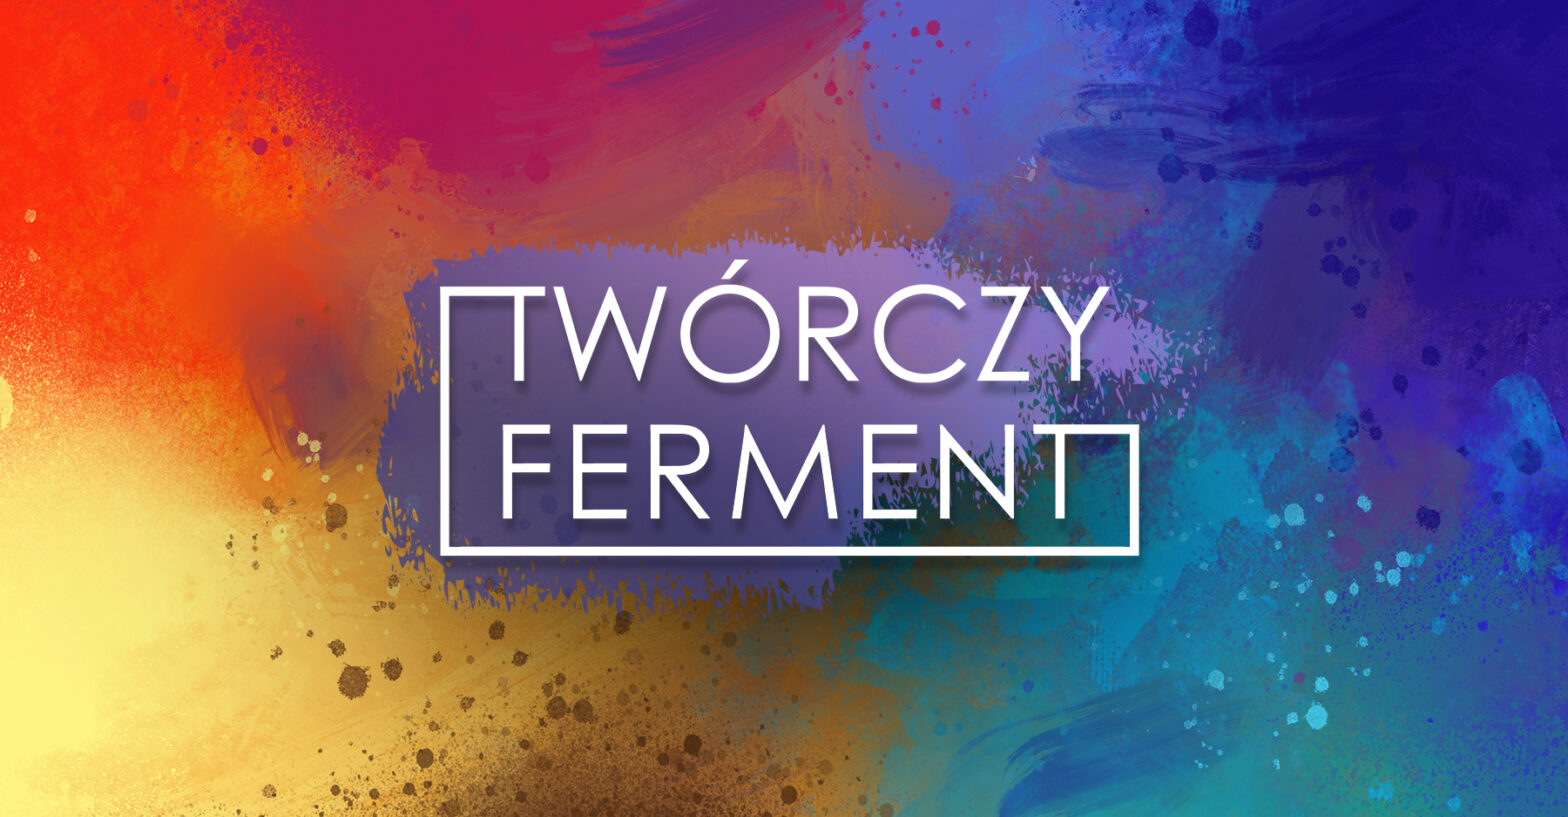 Logotyp projektu Twórczy ferment. W środku biały napis Twórczy ferment w tle kolorowe plamy farb.